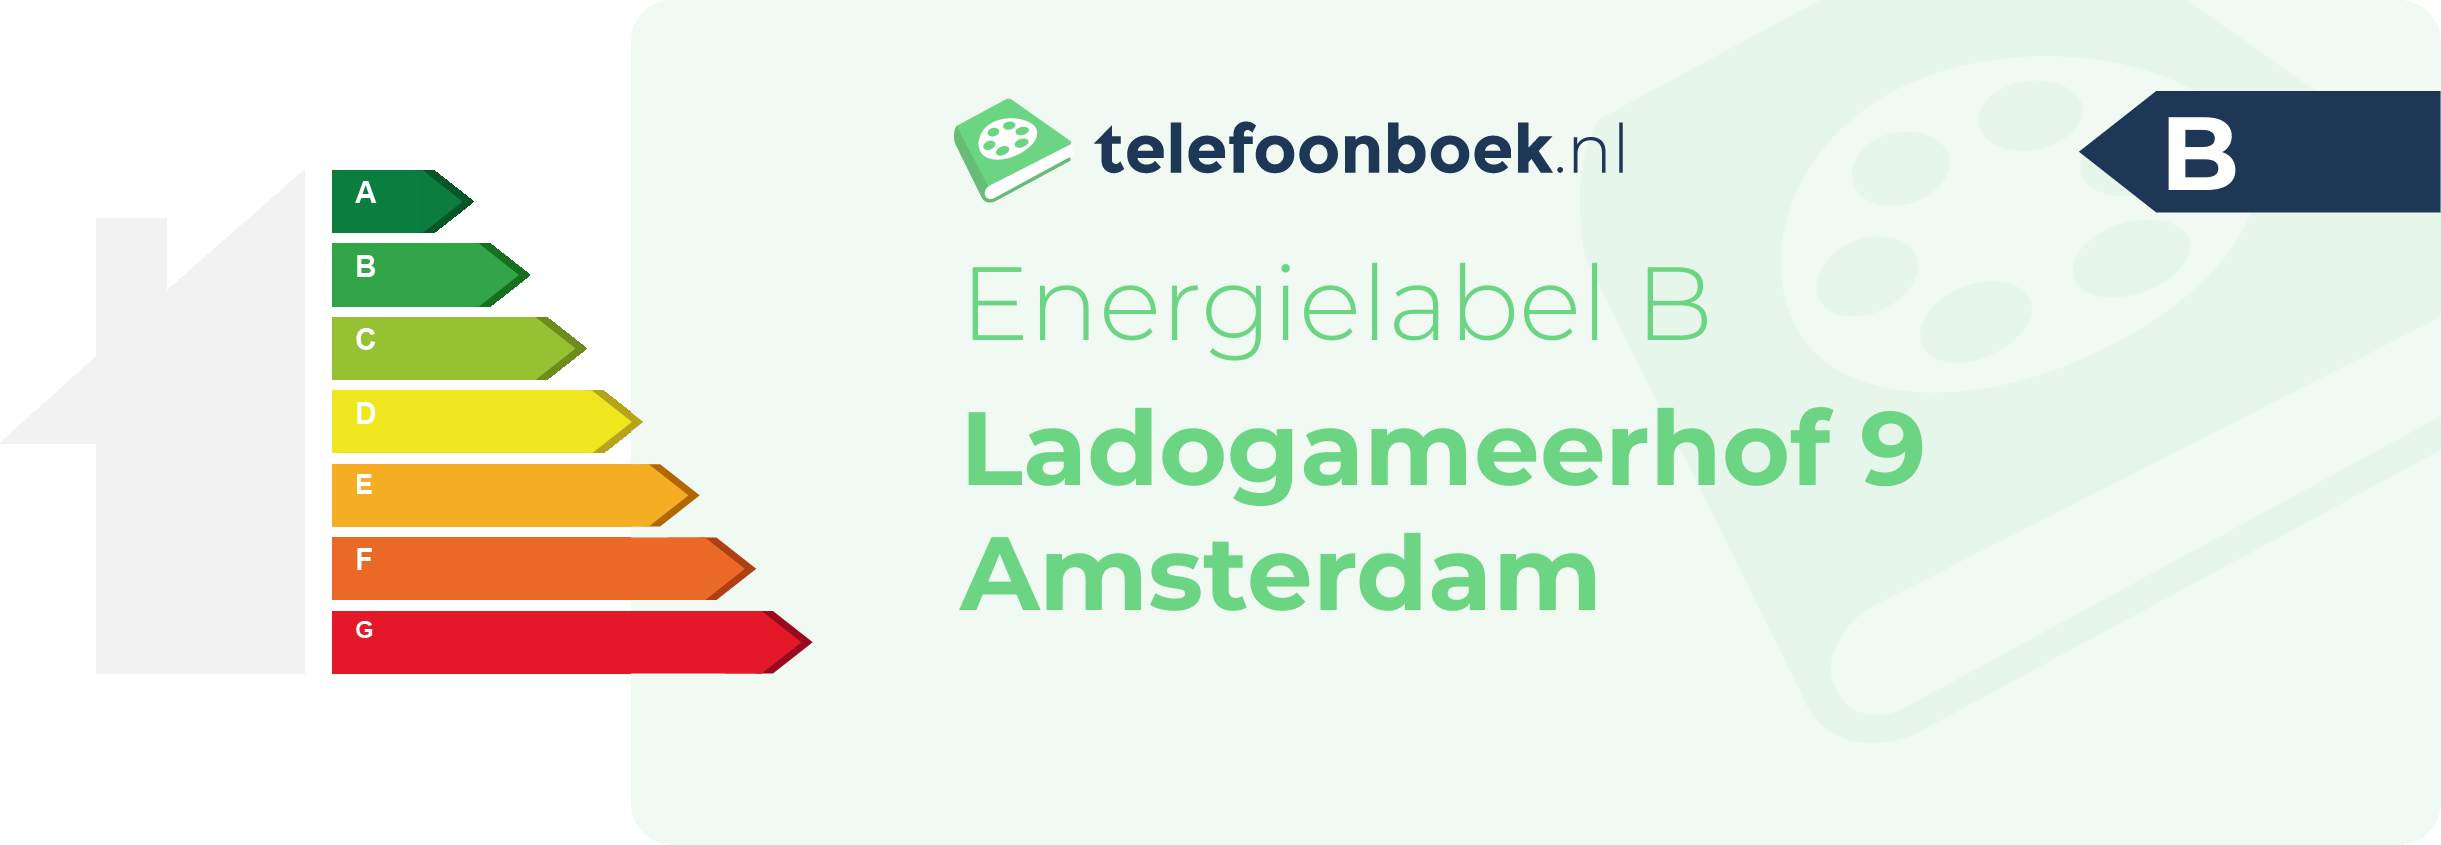 Energielabel Ladogameerhof 9 Amsterdam